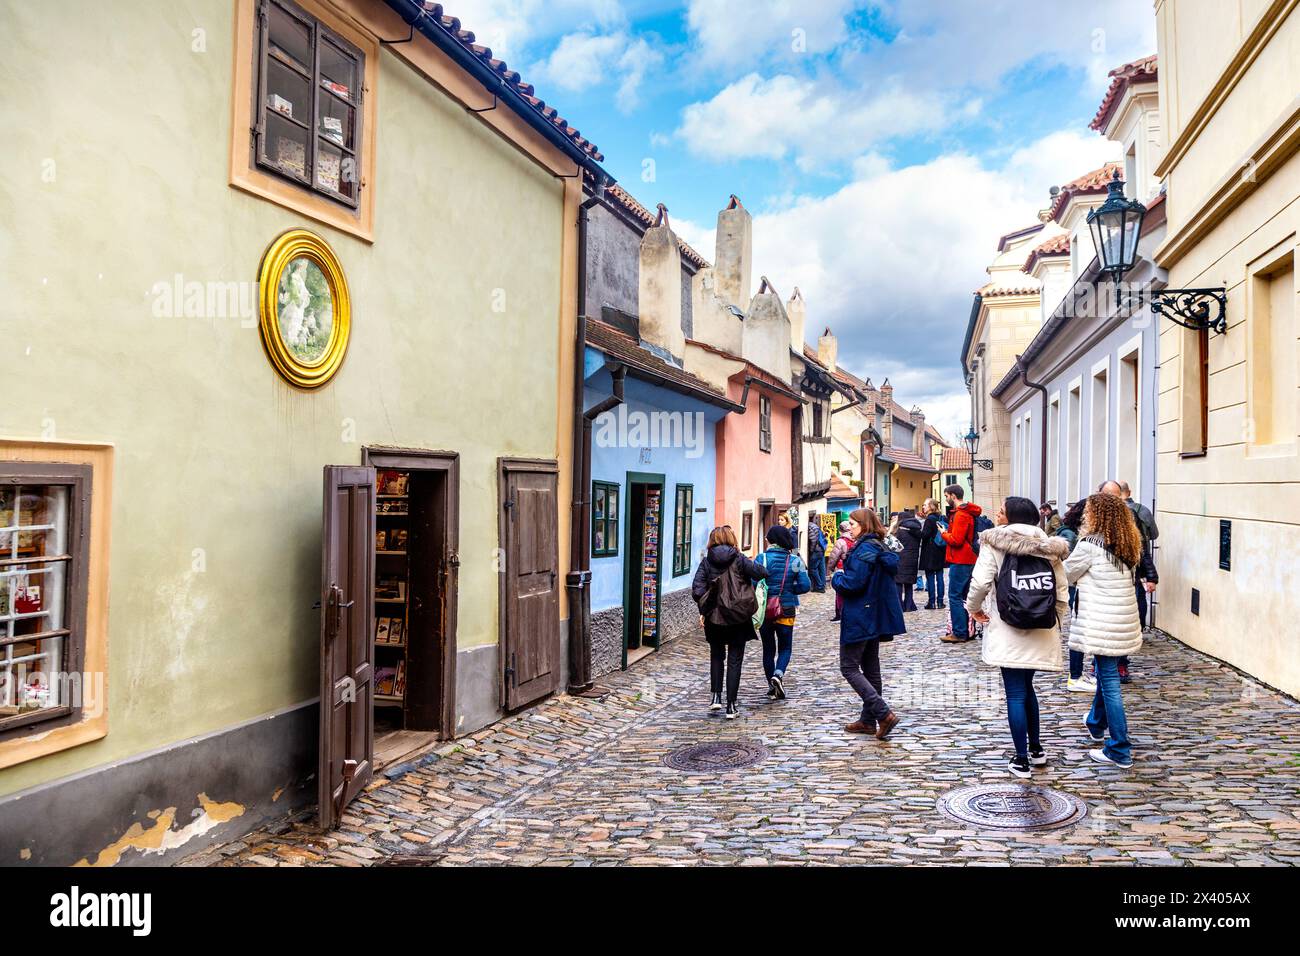 Maisons colorées historiques du XVIe siècle le long de la ruelle d'Or, château de Prage, Prague, République tchèque Banque D'Images